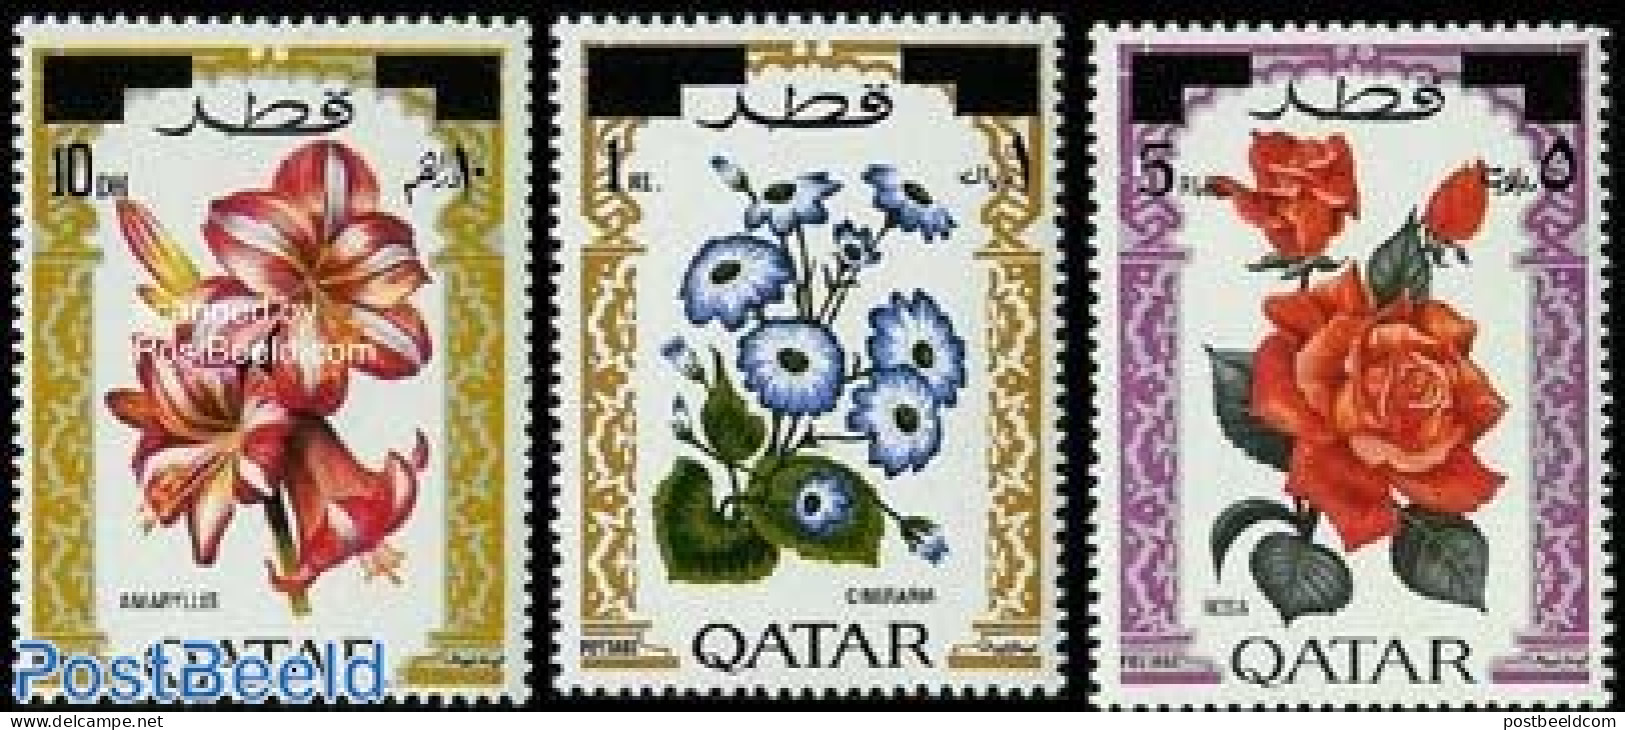 Qatar 1972 Flowers, Overprints 3v, Mint NH, Nature - Flowers & Plants - Roses - Qatar